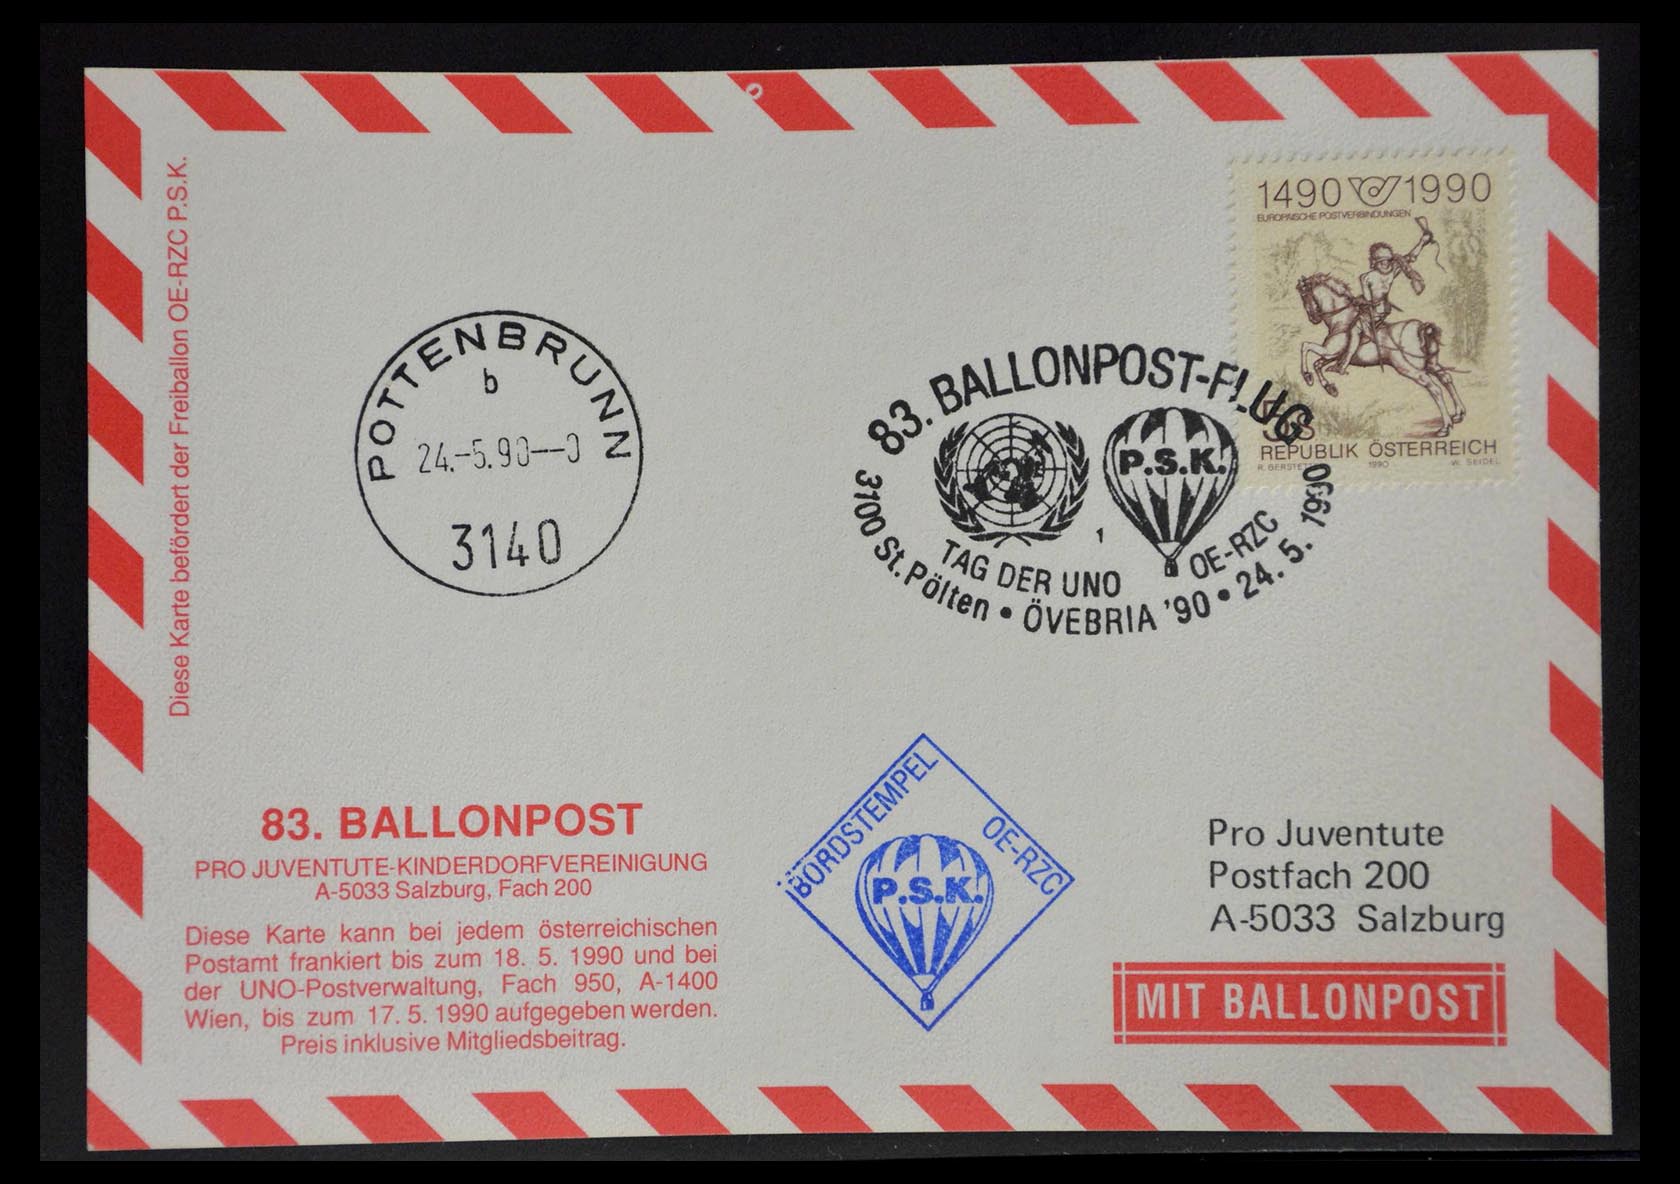 28889 031 - 28889 Balloon post 1927-2001.